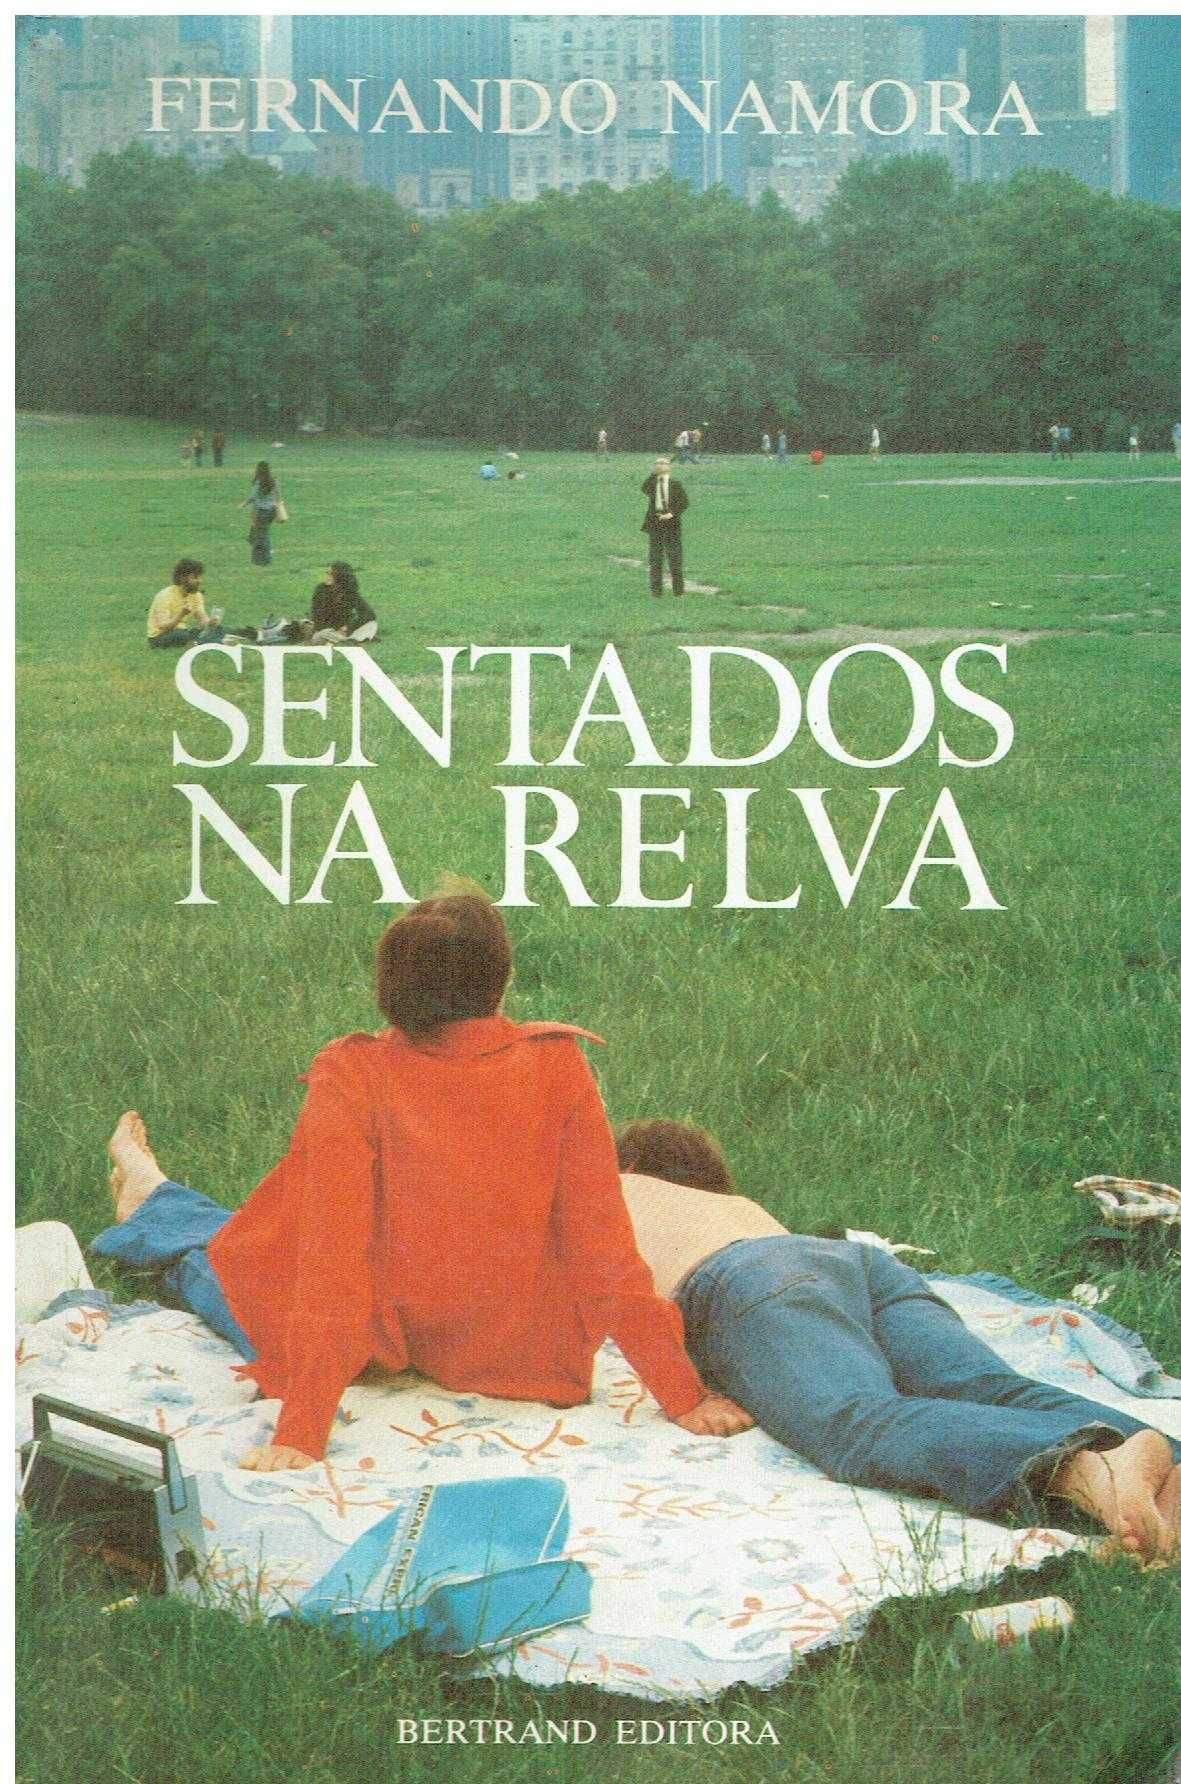 766 - Livros de Fernando Namora 3